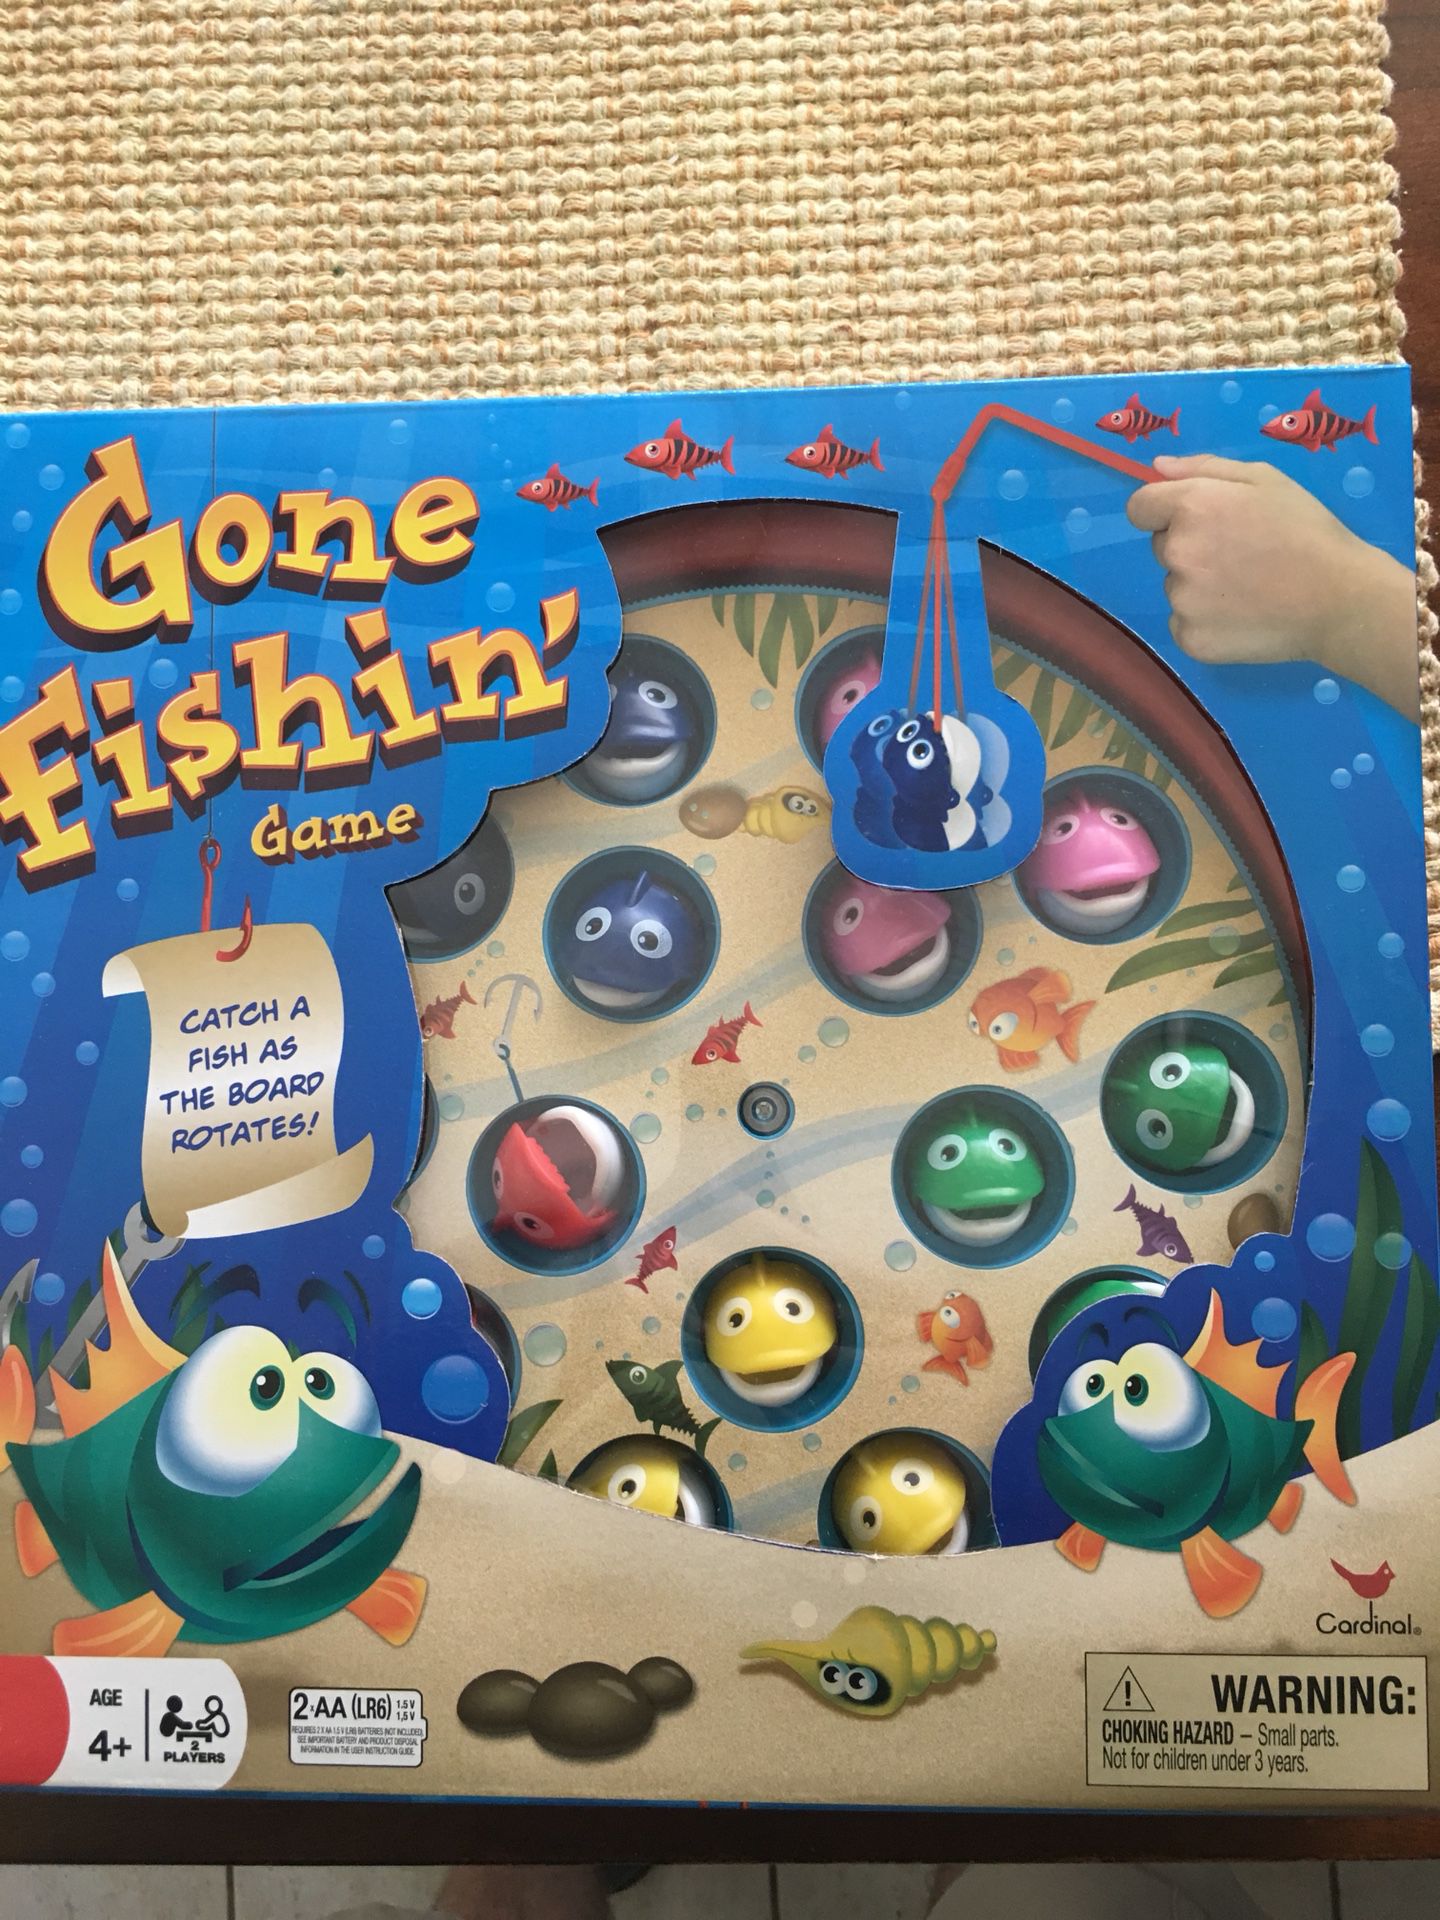 Fish game